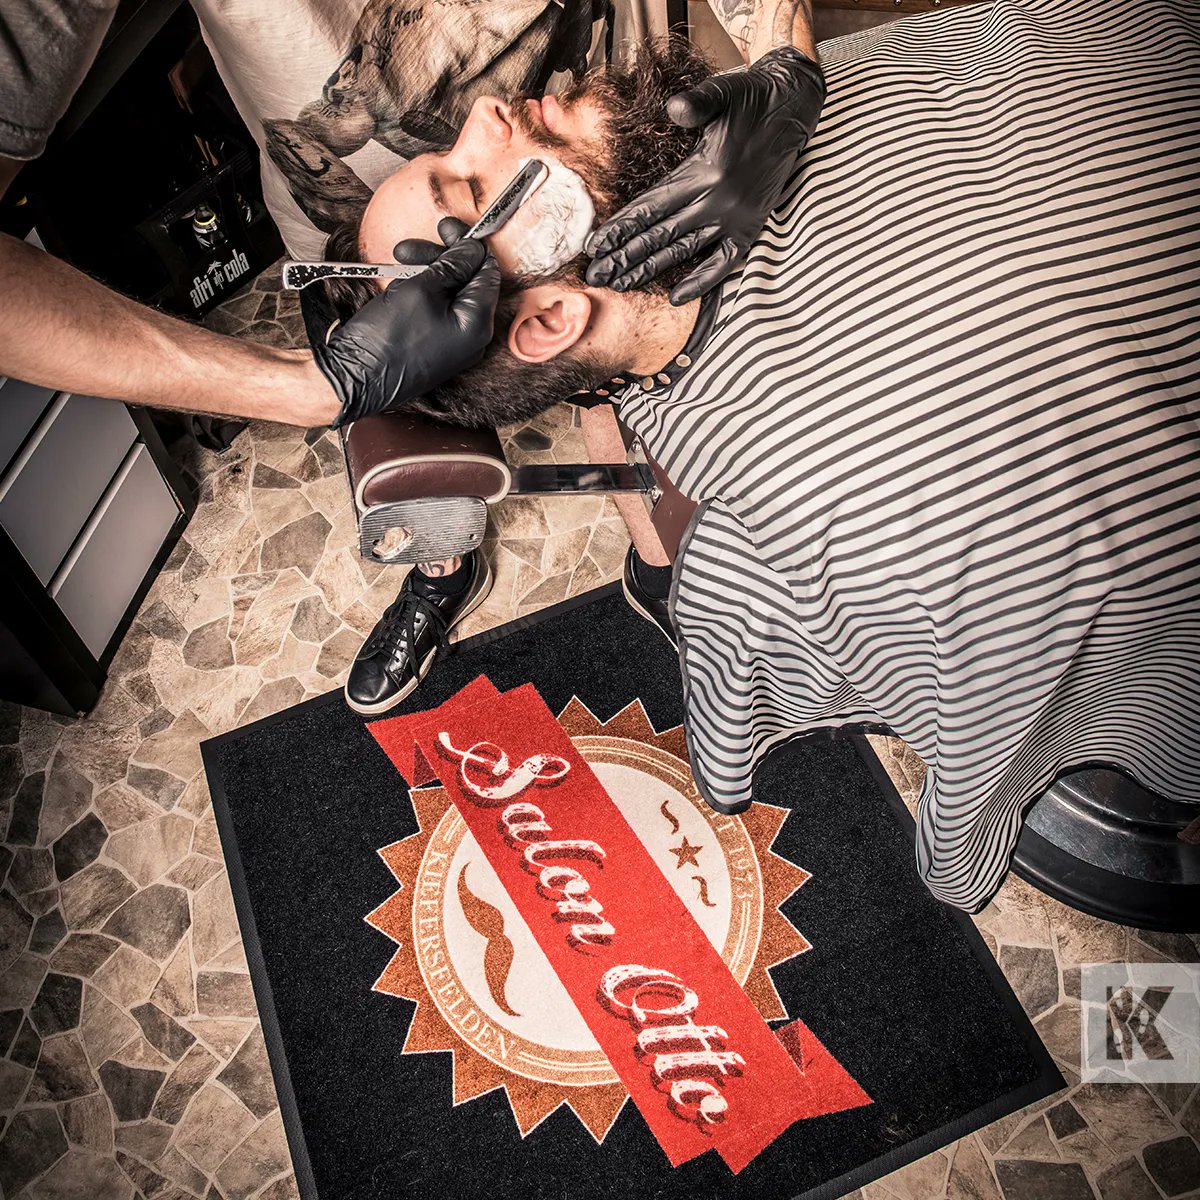 Show off your stylish logo in the entrance of your studio or salon with a cool branded logo mat.

#KleenTex  #KleenTexEurope #barbershop #barbershopextra #branding #logomats #doormats #floormats #makemoreofyourfloor